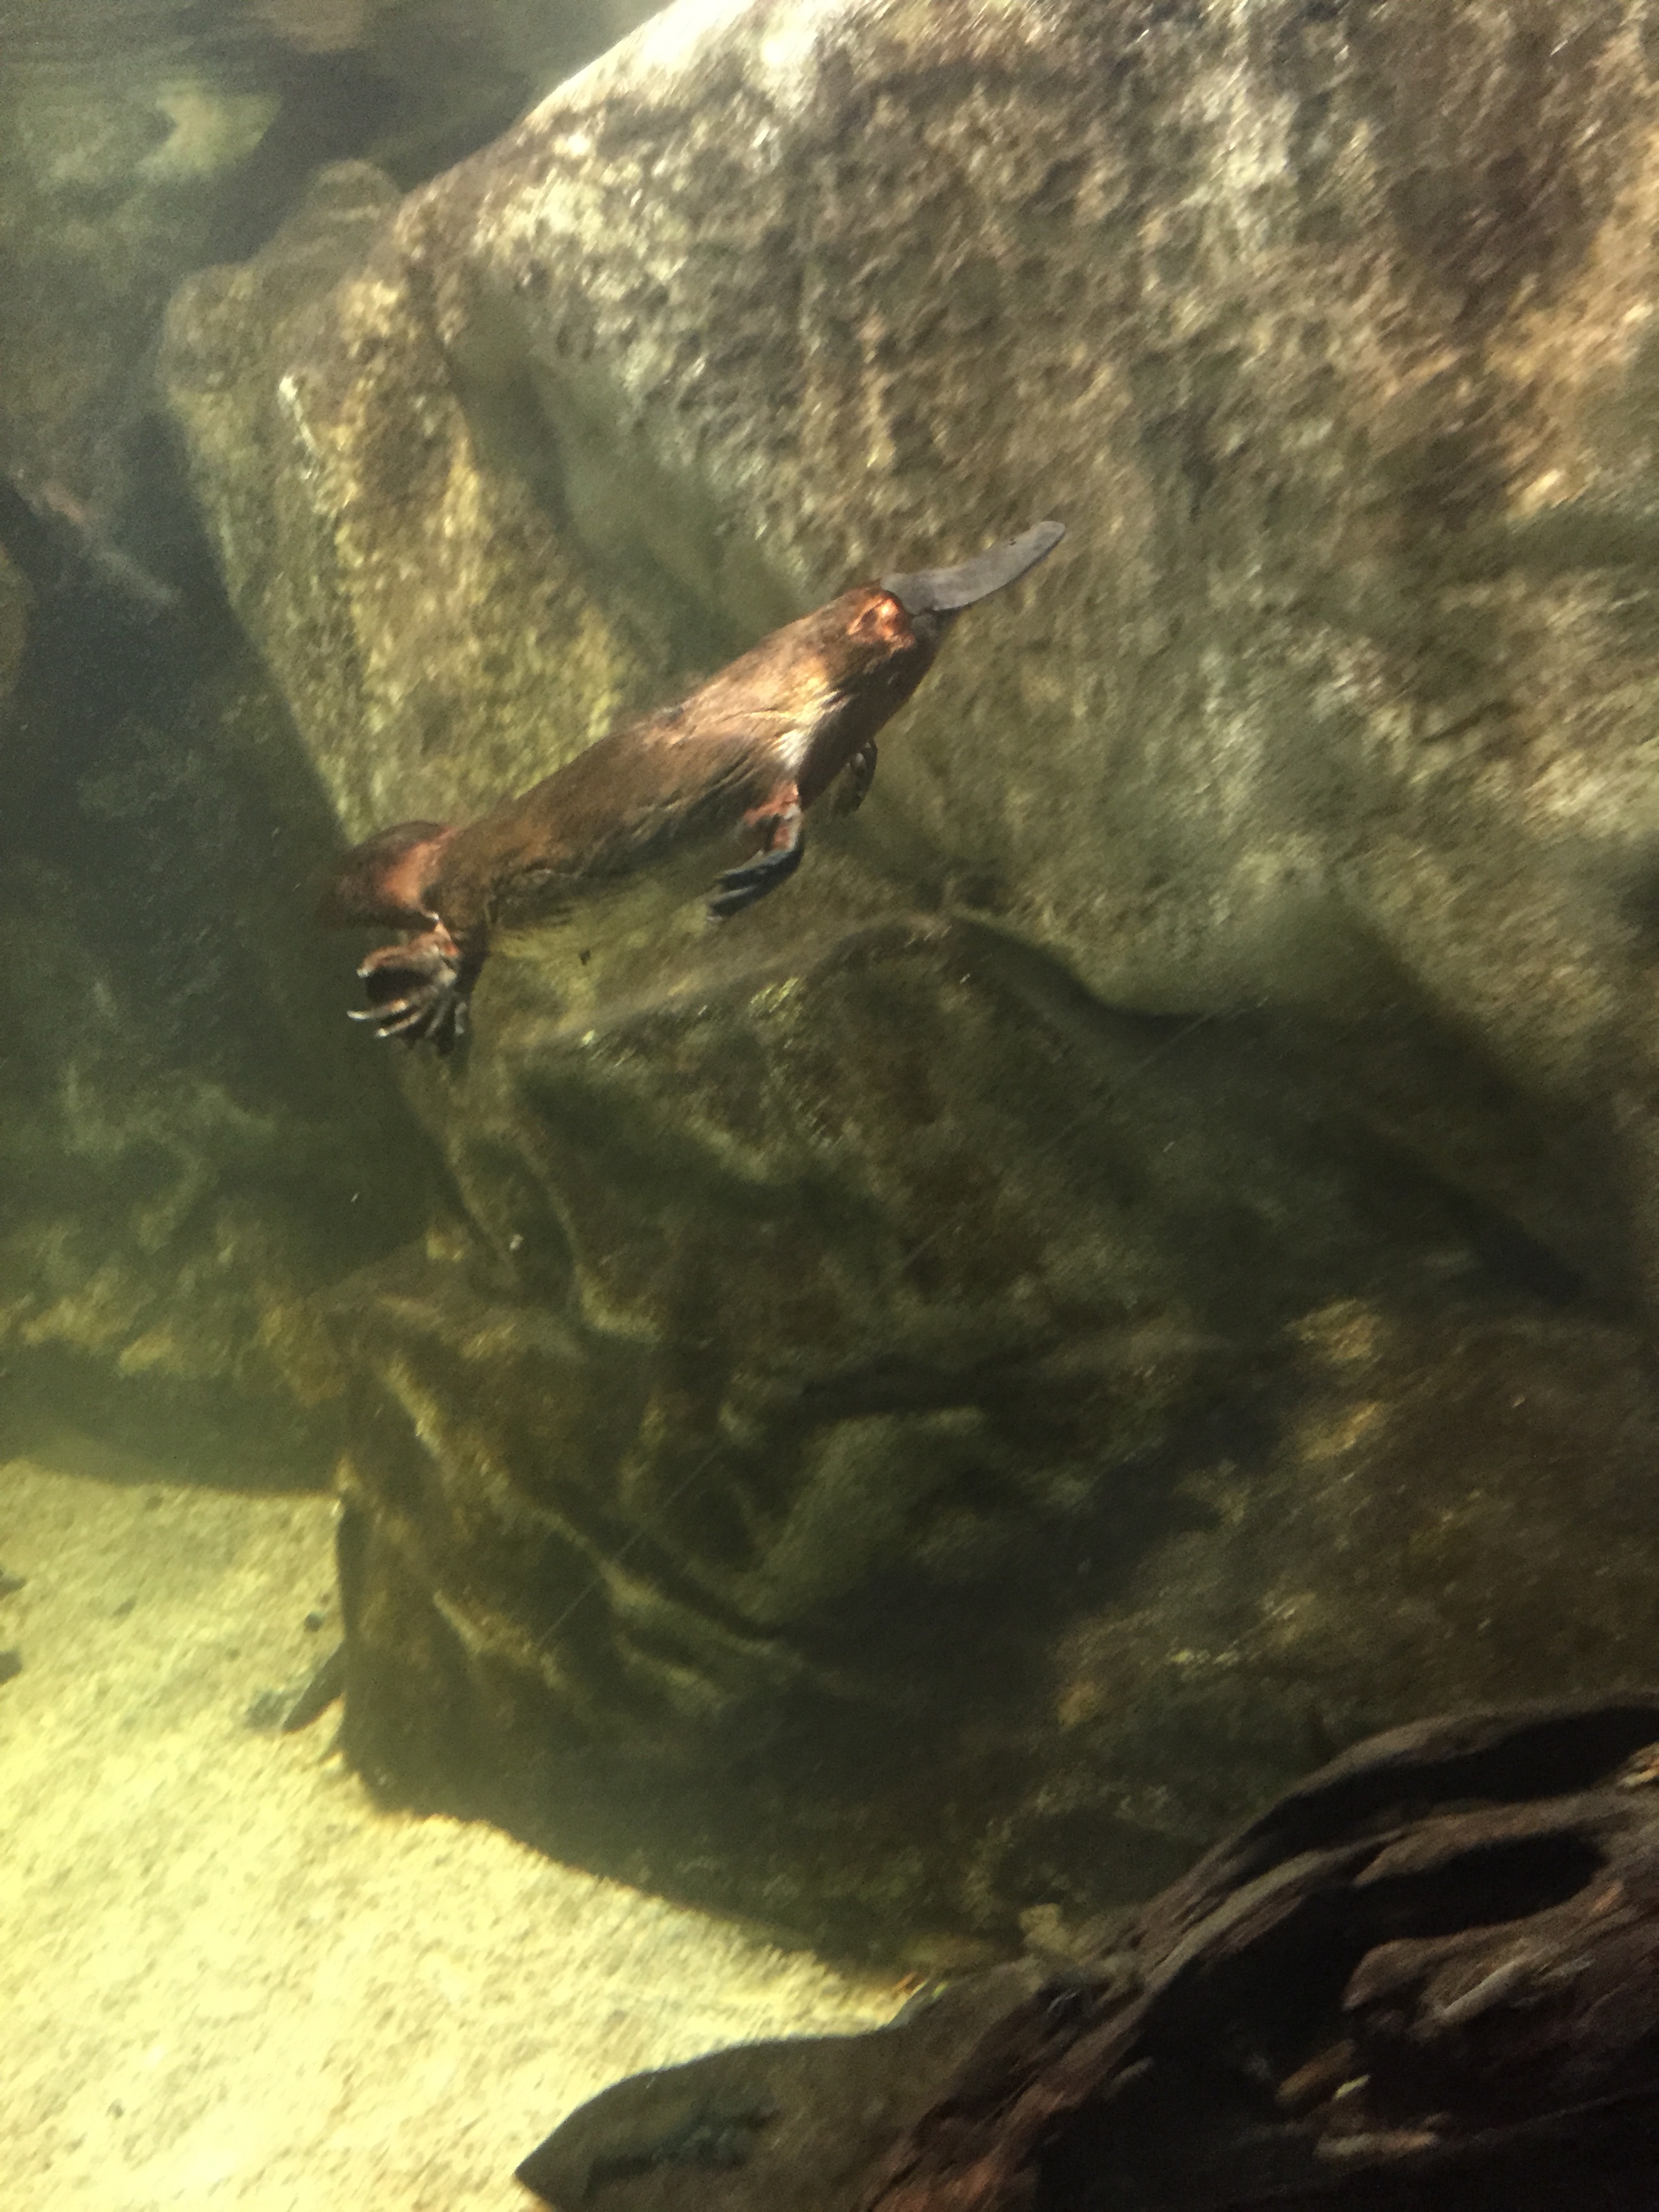 Sea Life Sydney Aquarium - Platypus